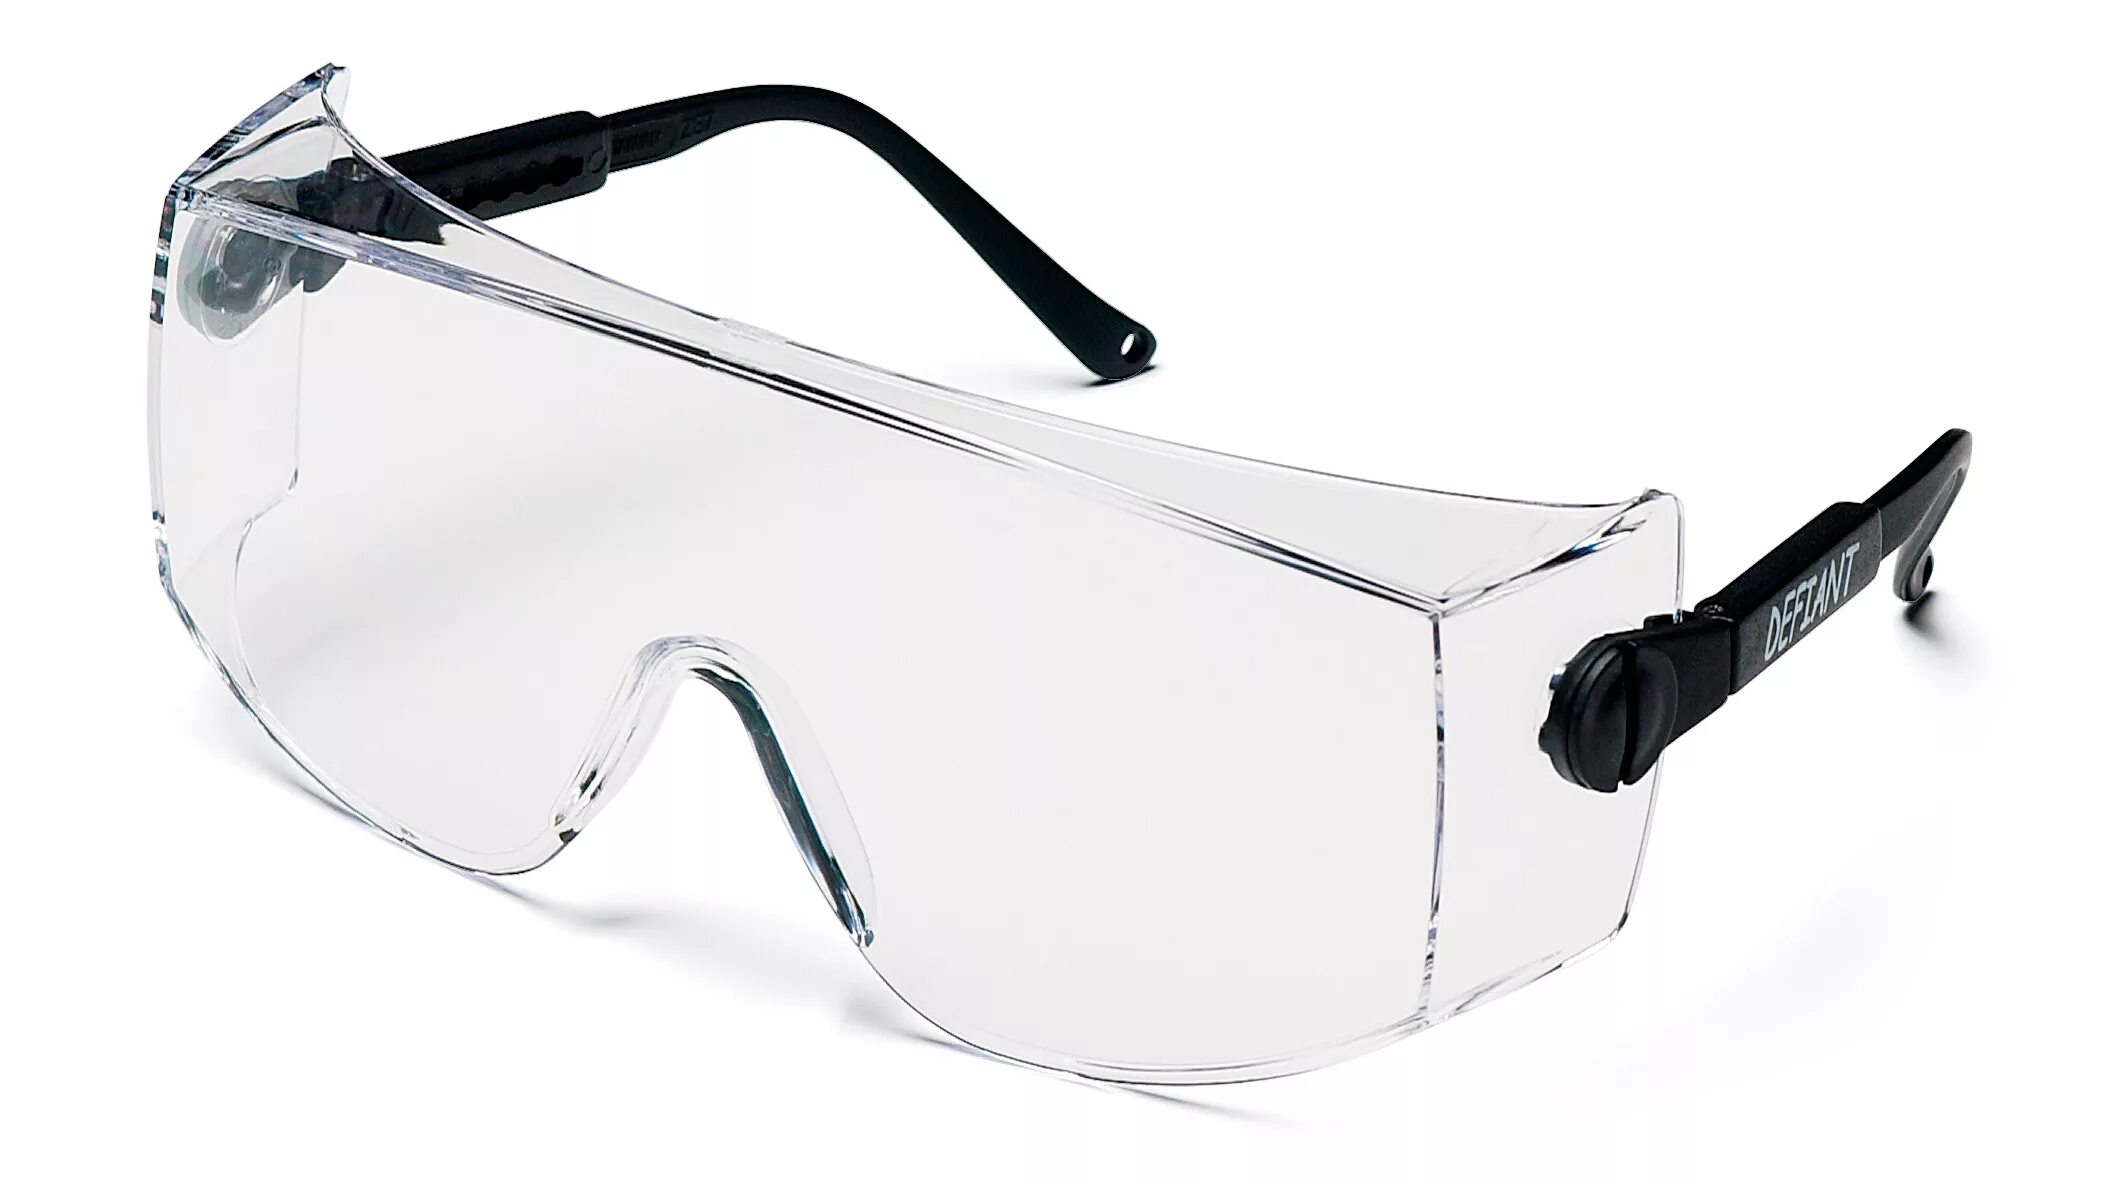 Очки защитные затемненные. Защитные очки Fit рос 12219. Jsg311-c очки защитные Pro Vision открытого типа. Очки защитные Fit 12218 черный. Очки защитные ОРТЕХ спорт.